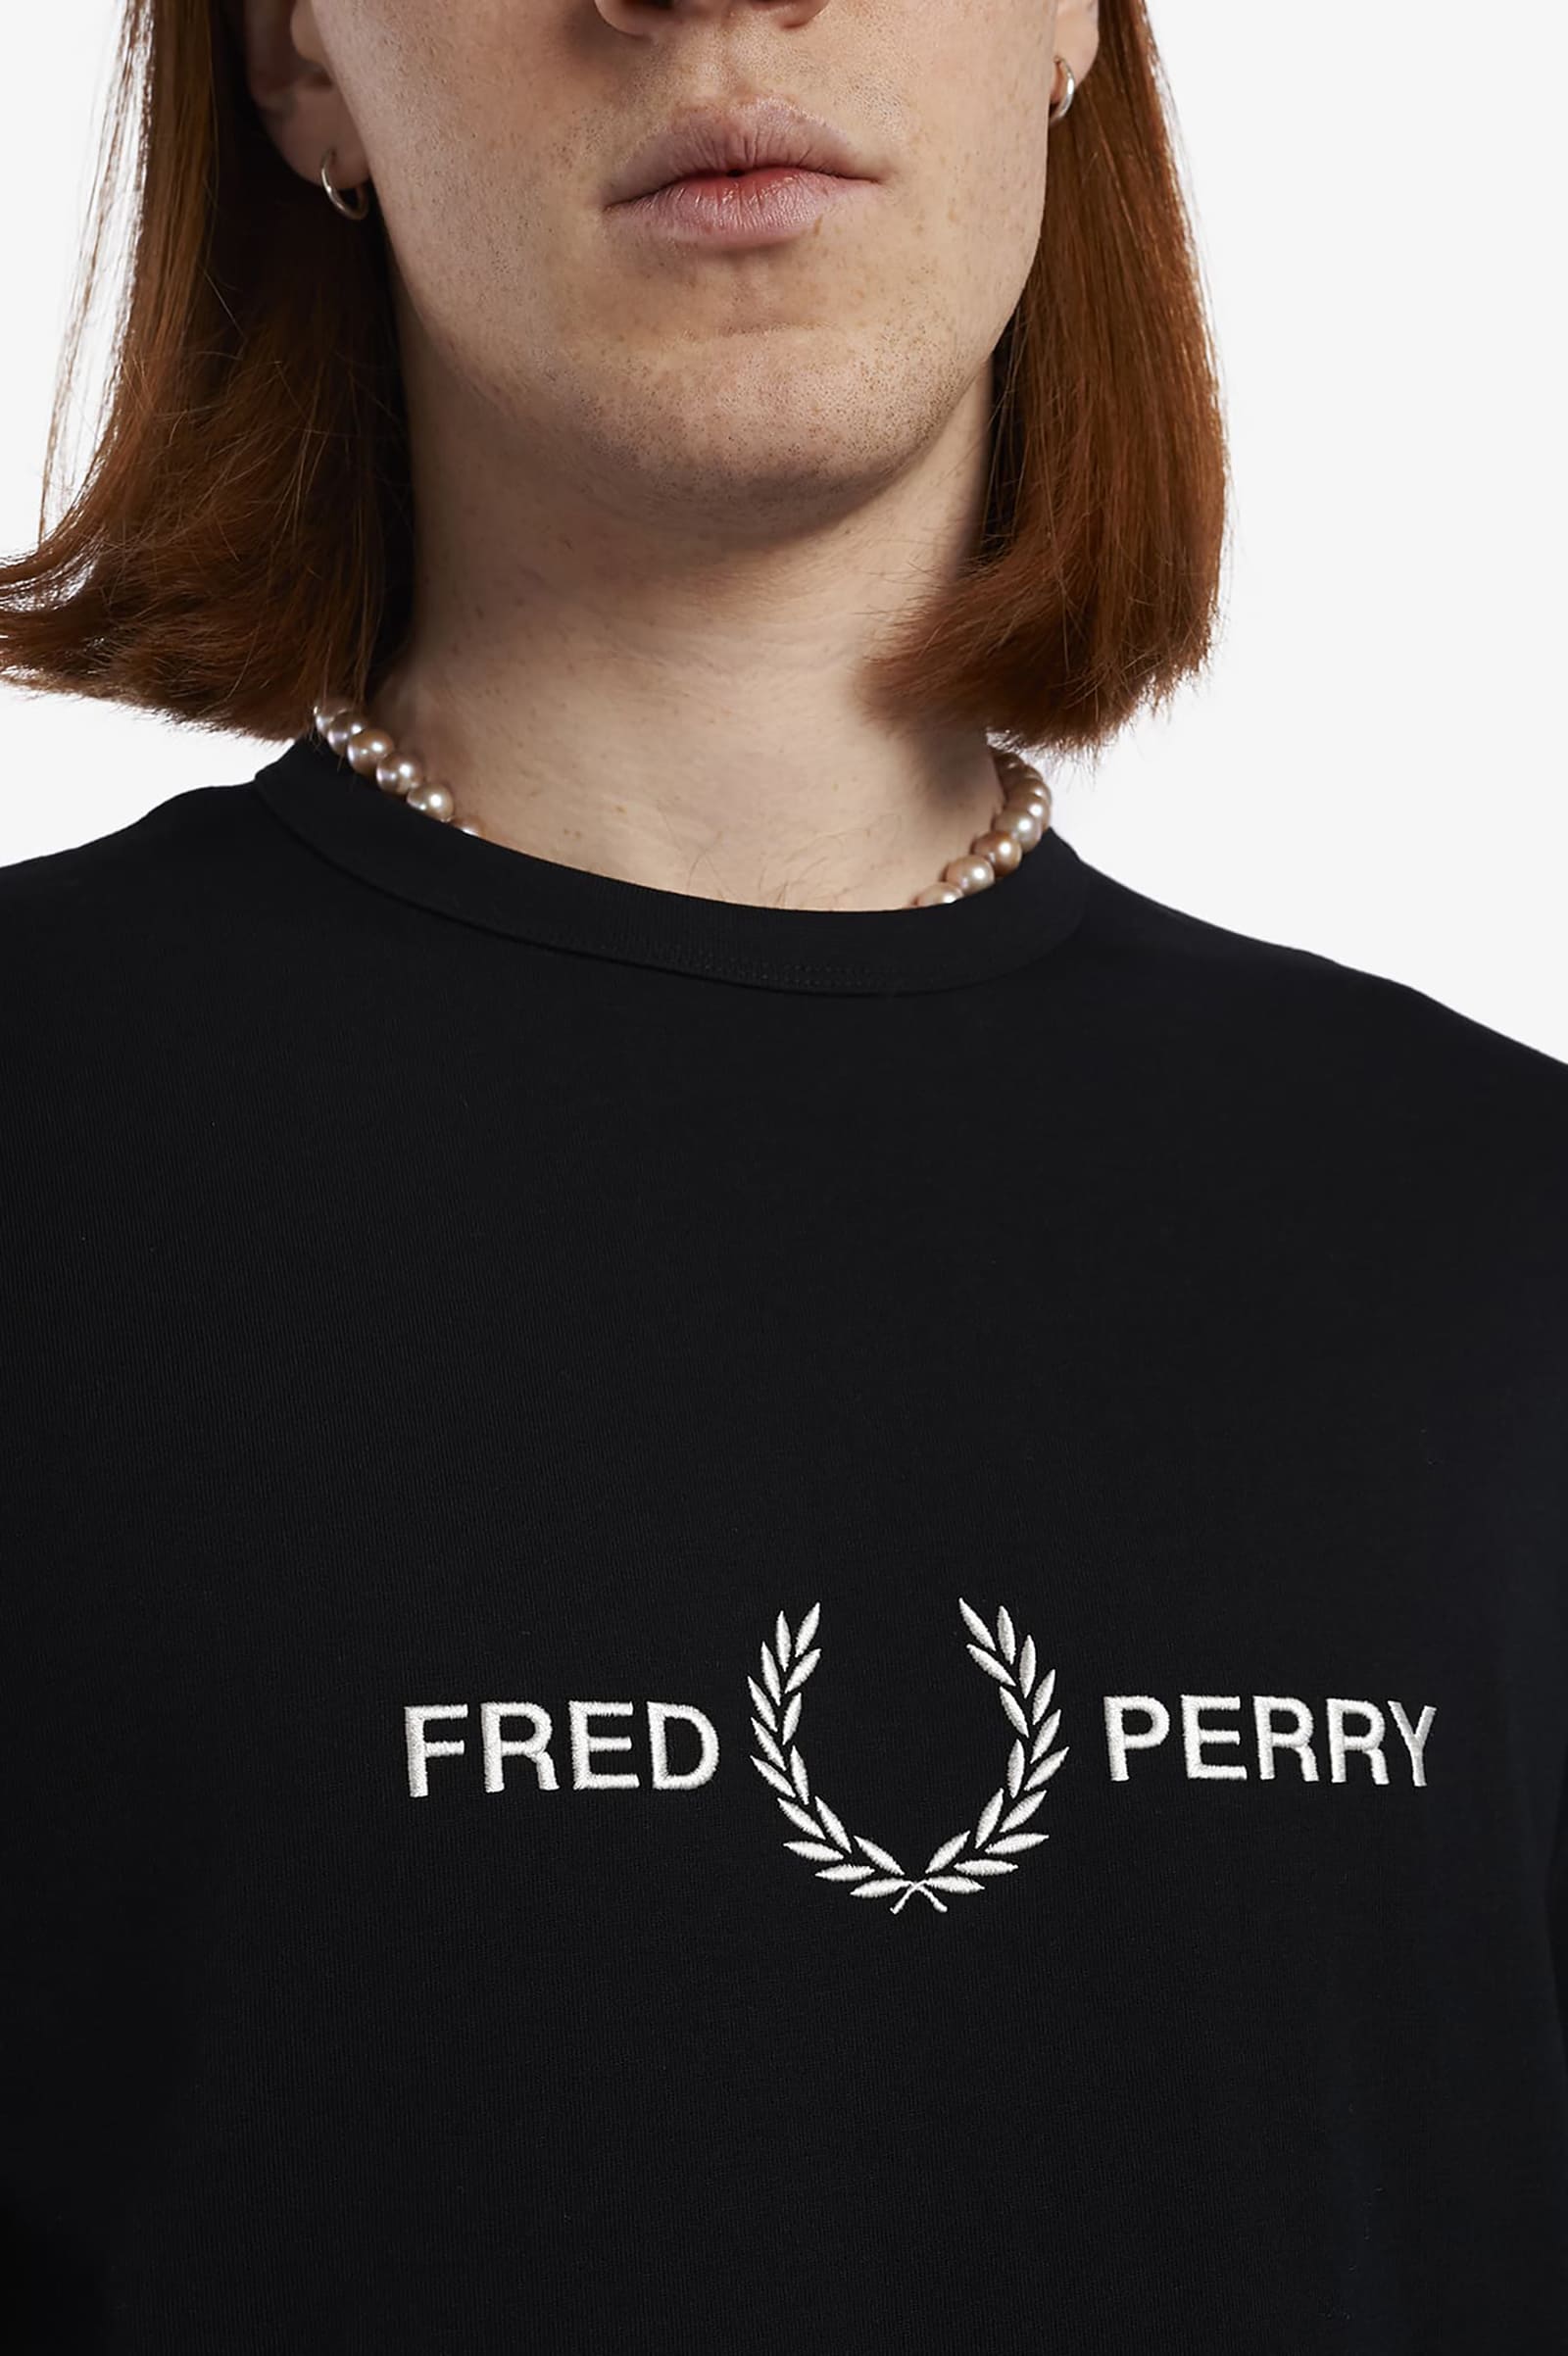 FRED PERRY フレッドペリー デザインニット 胸ロゴ 刺繍 ホワイト